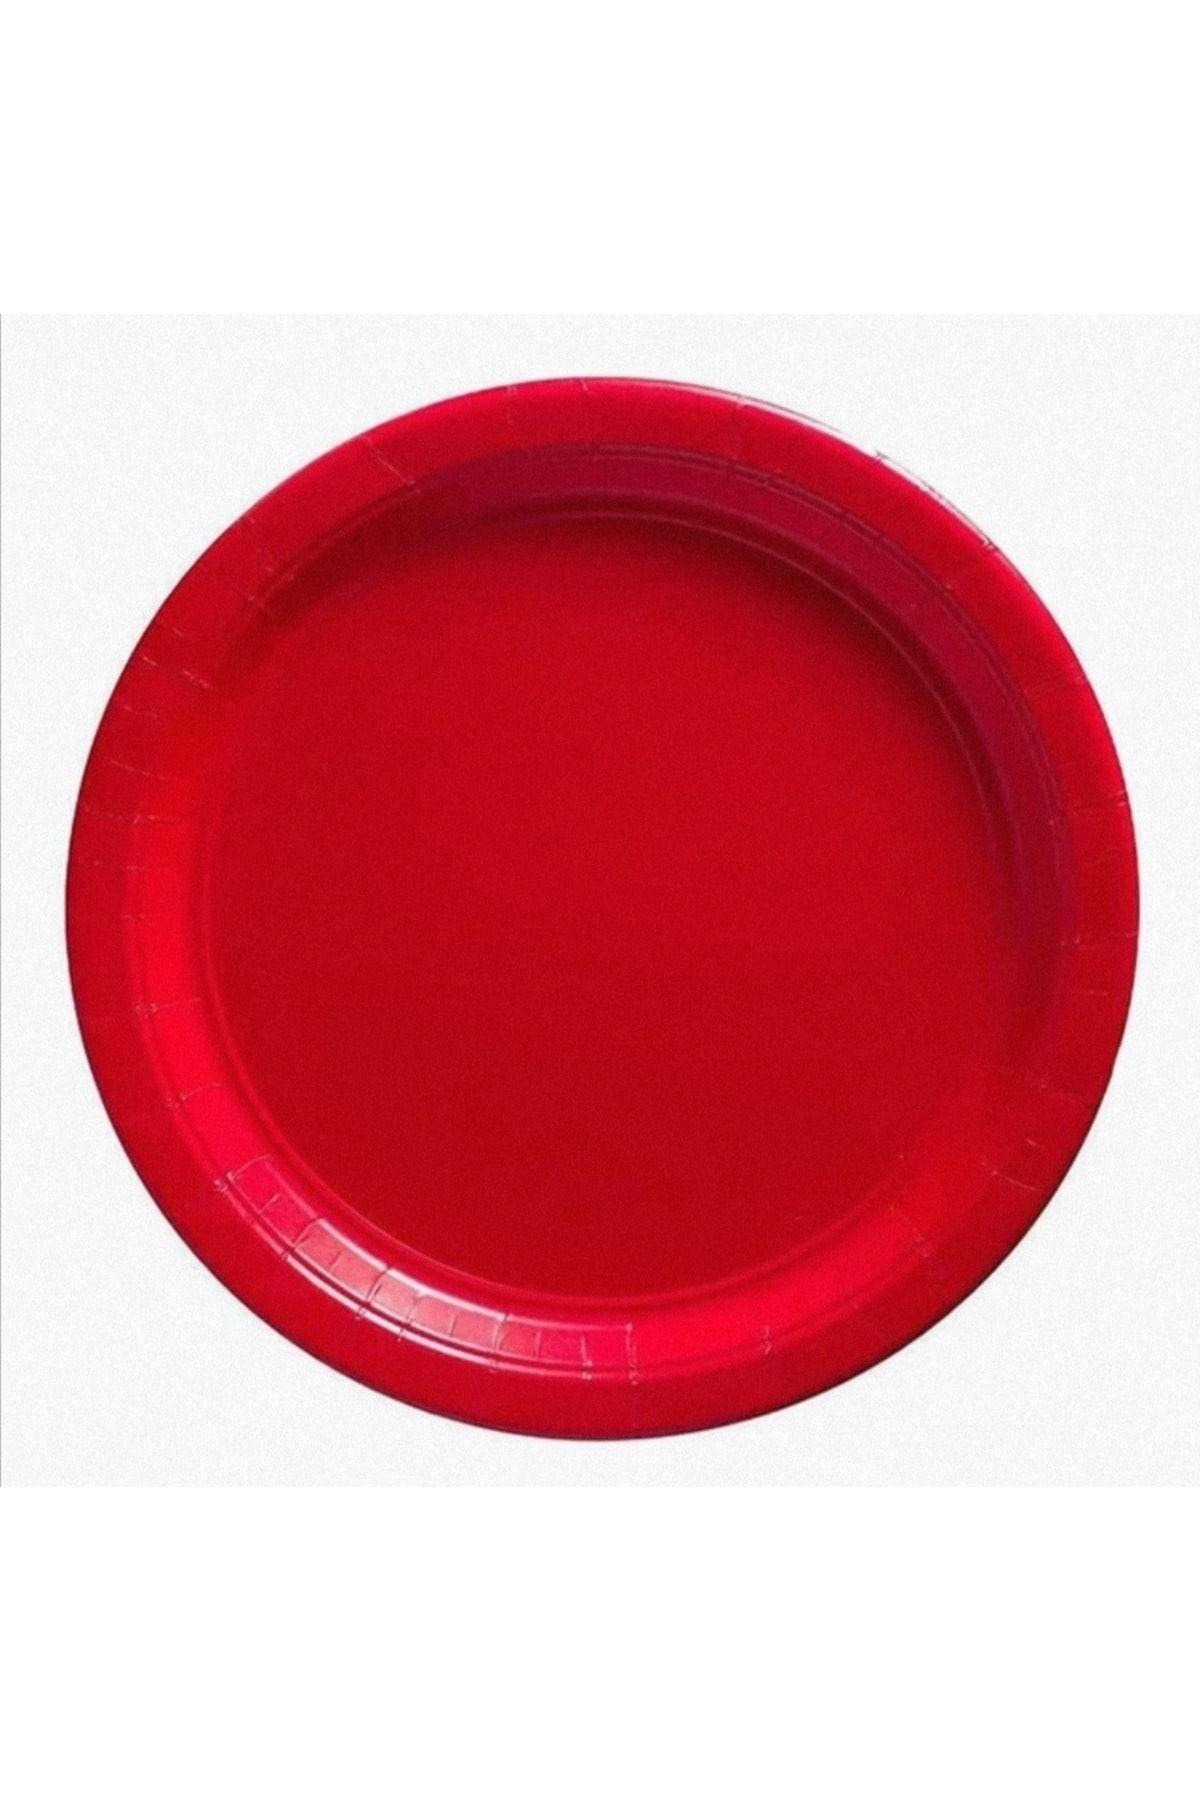 Тарелки красного цвета. Красная тарелка. Красное блюдце. Тарелки цветные однотонные. Красная тарелочка.